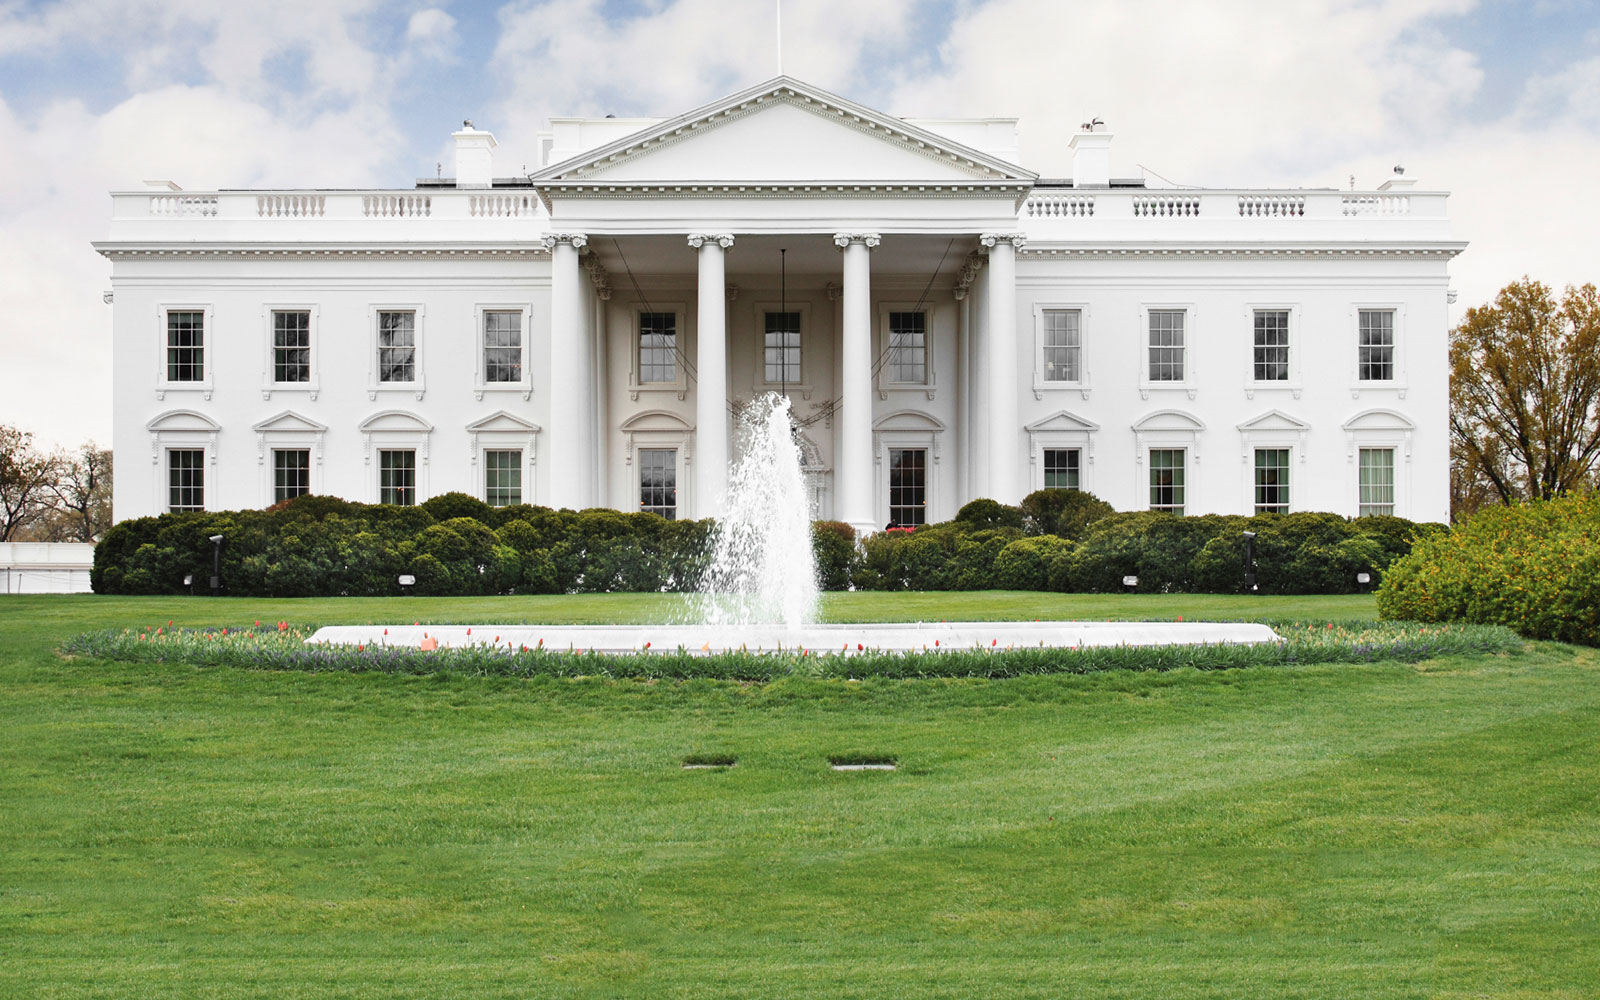 The White House at Washington, DC